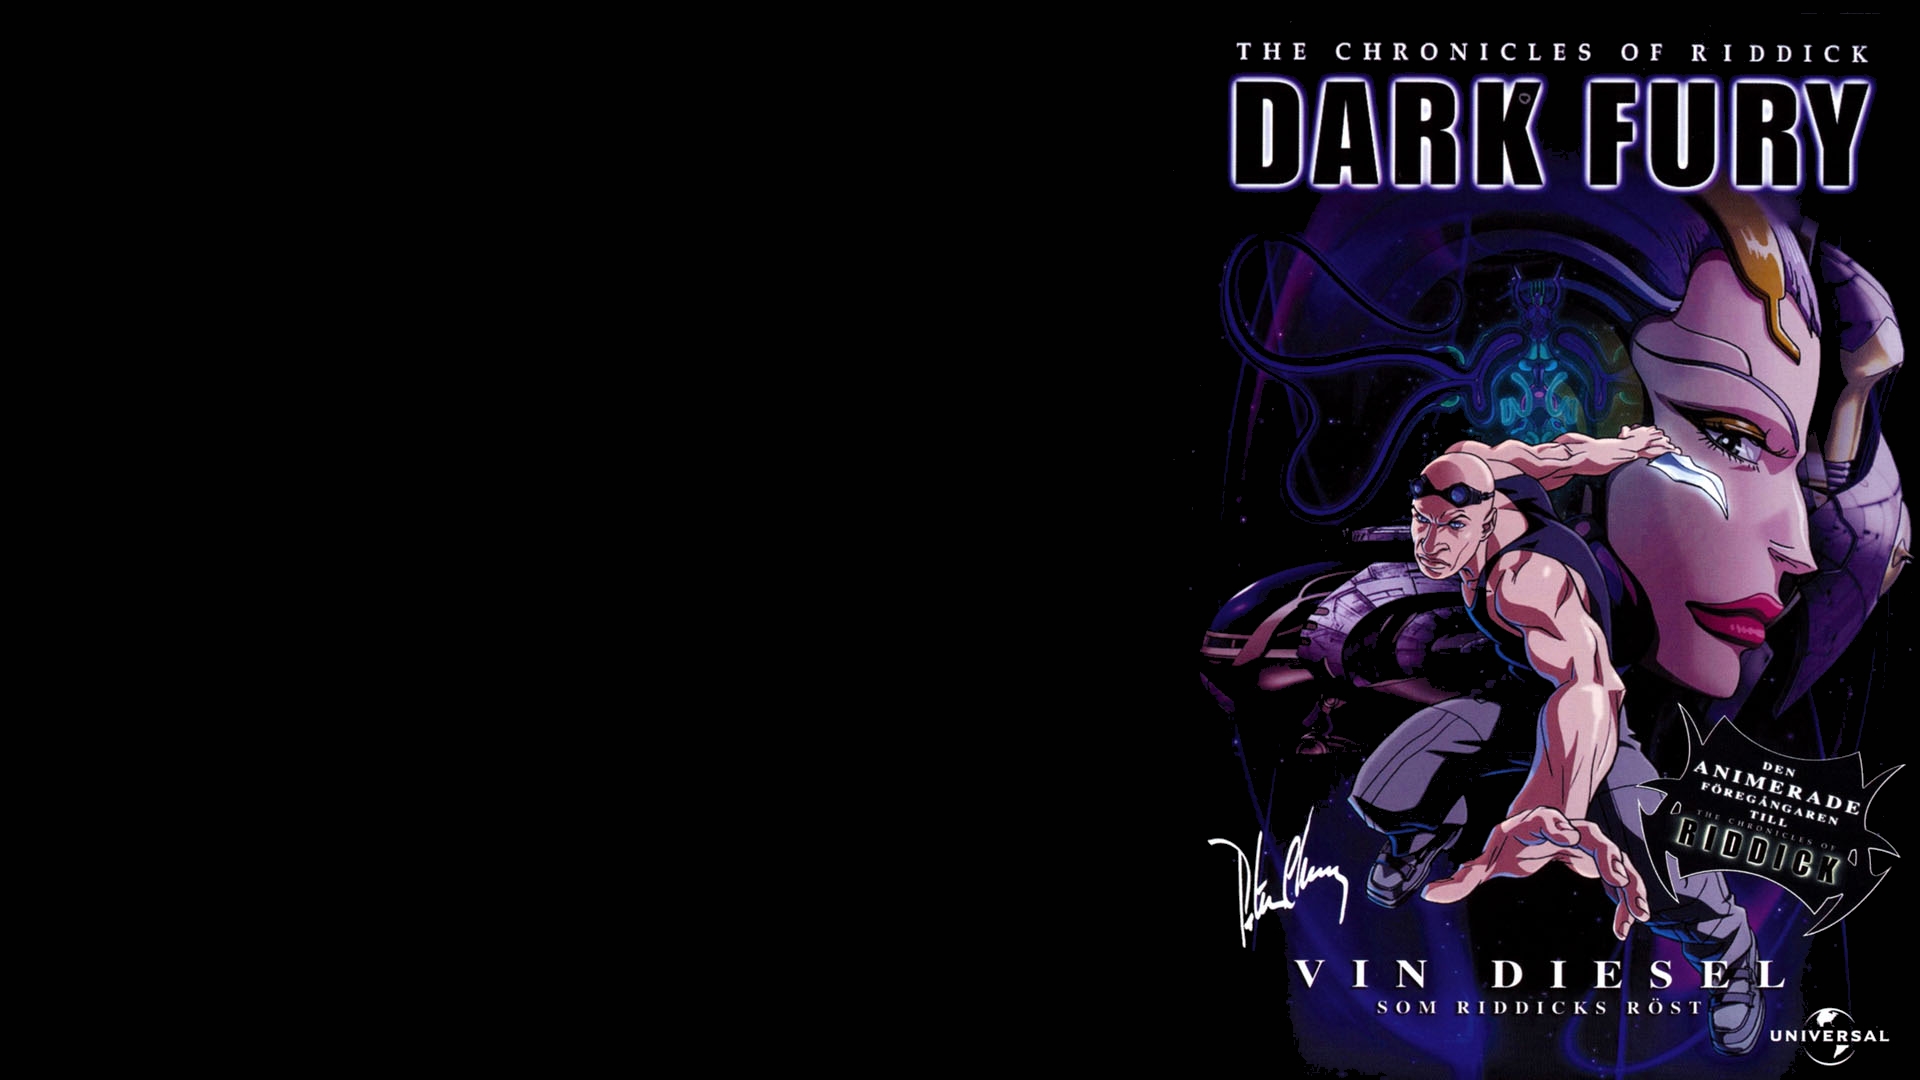 The Chronicles Of Riddick Dark Fury Vin Diesel Wallpaper